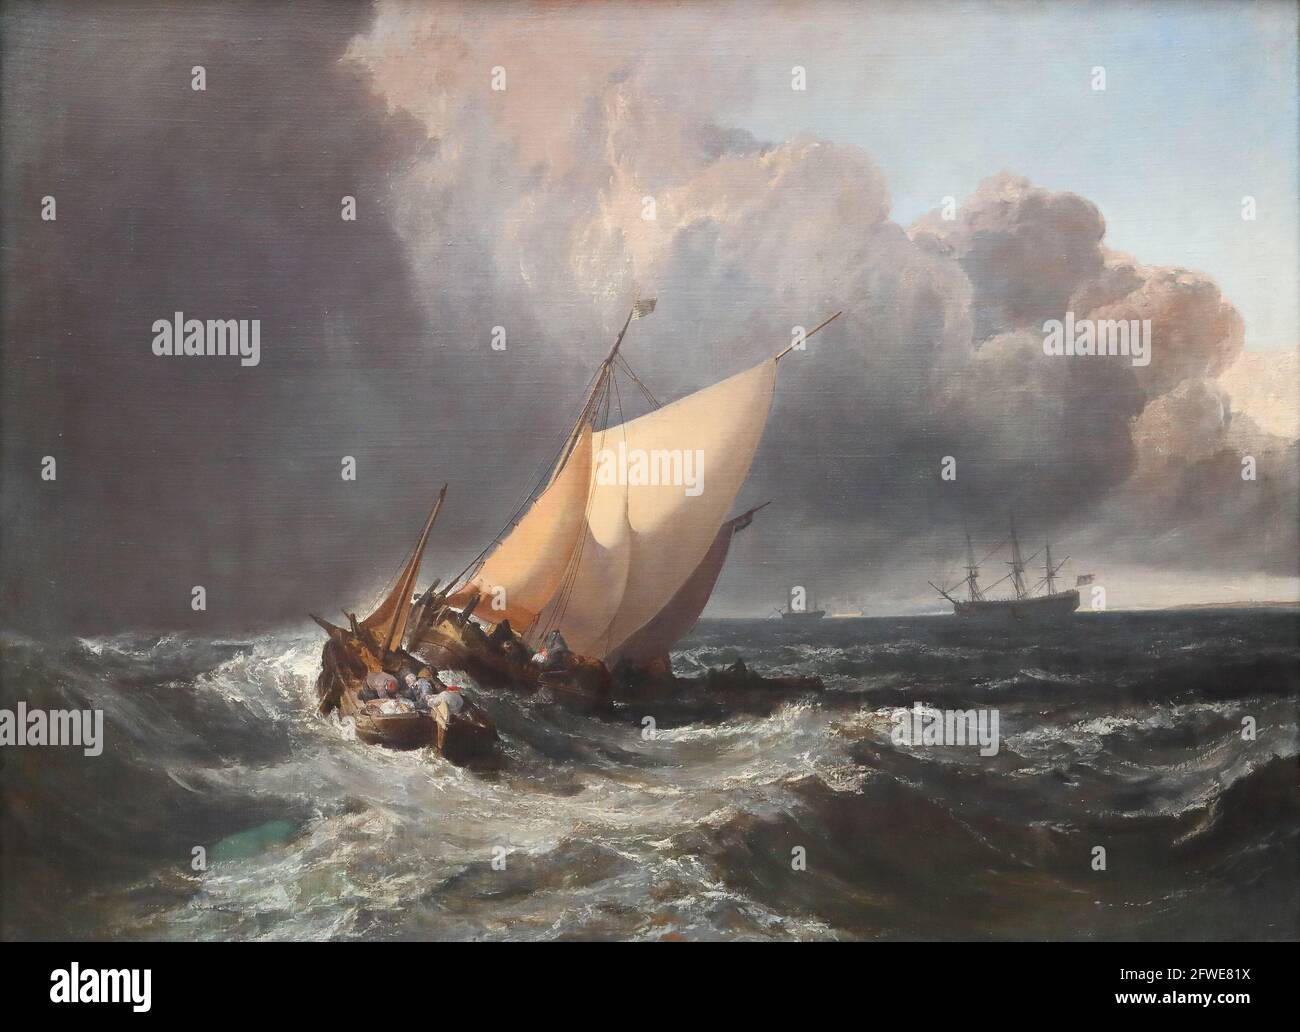 Bateaux néerlandais dans un 'Gale le morceau' par la mer Bridgewater peintre anglais William Turner à la National Gallery, Trafalgar Square, London, UK Banque D'Images